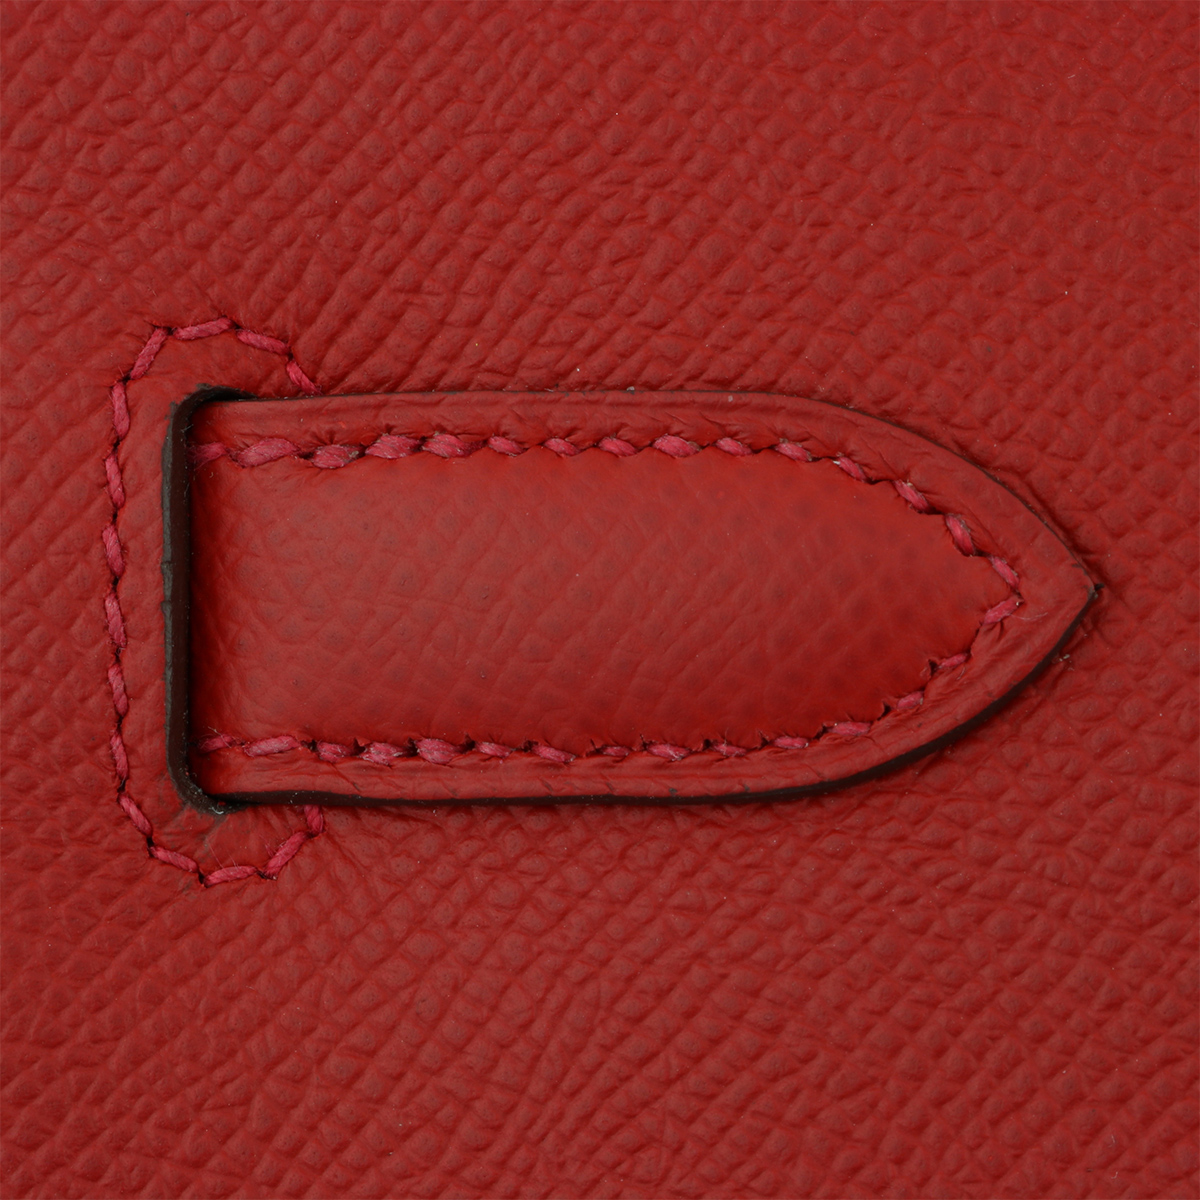 Hermès Rouge Casaque Epsom Leather Birkin 30 with Palladium Hardware 2014